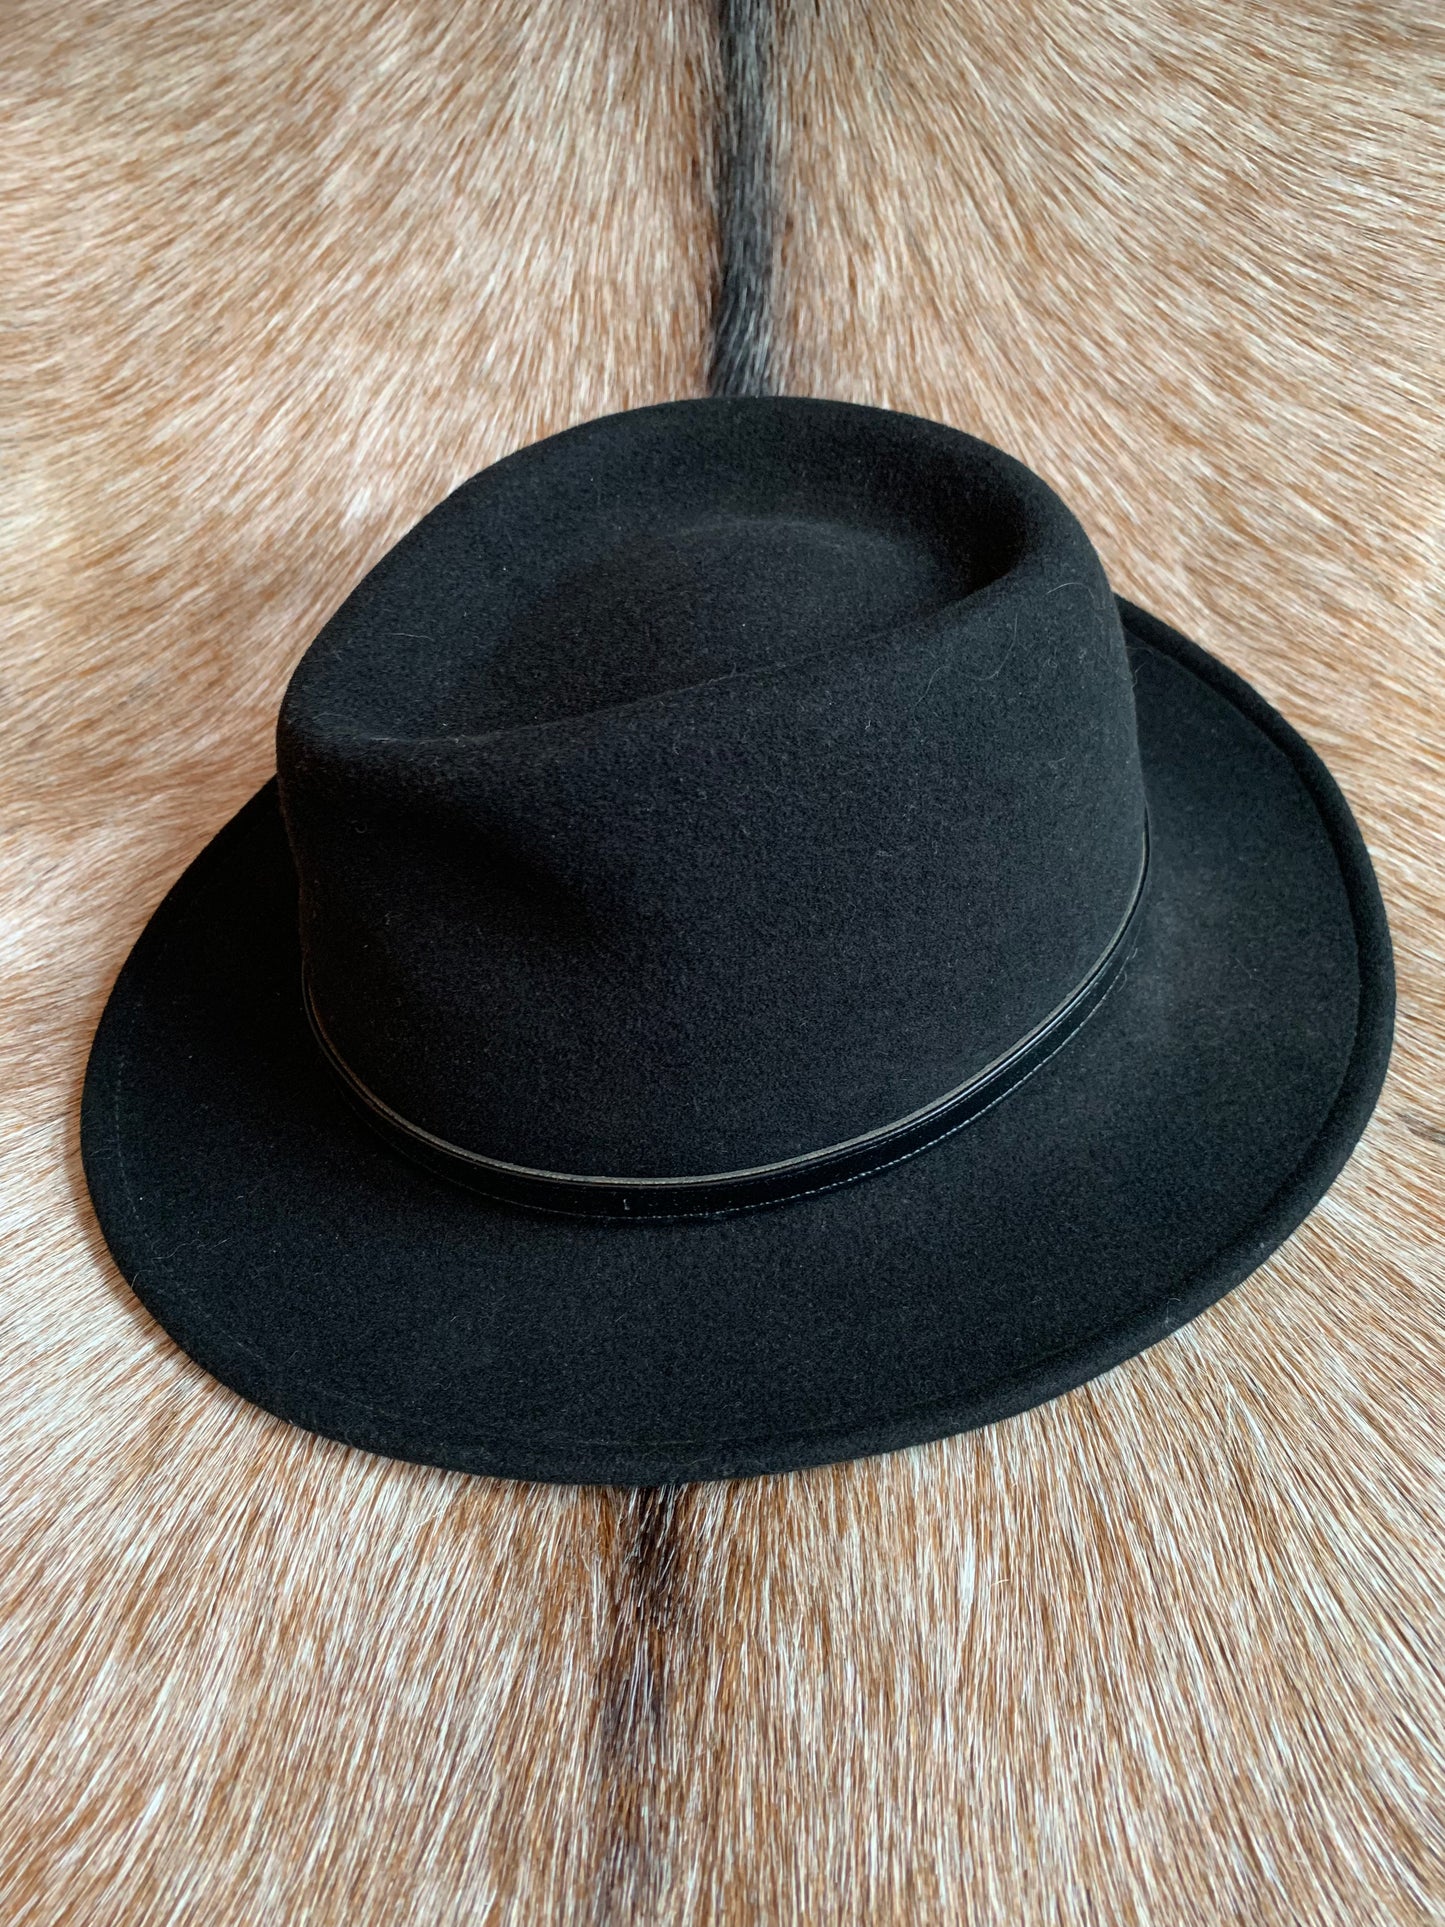 Vintage Stetson Black Wool Wide Brimmed Fedora Hat